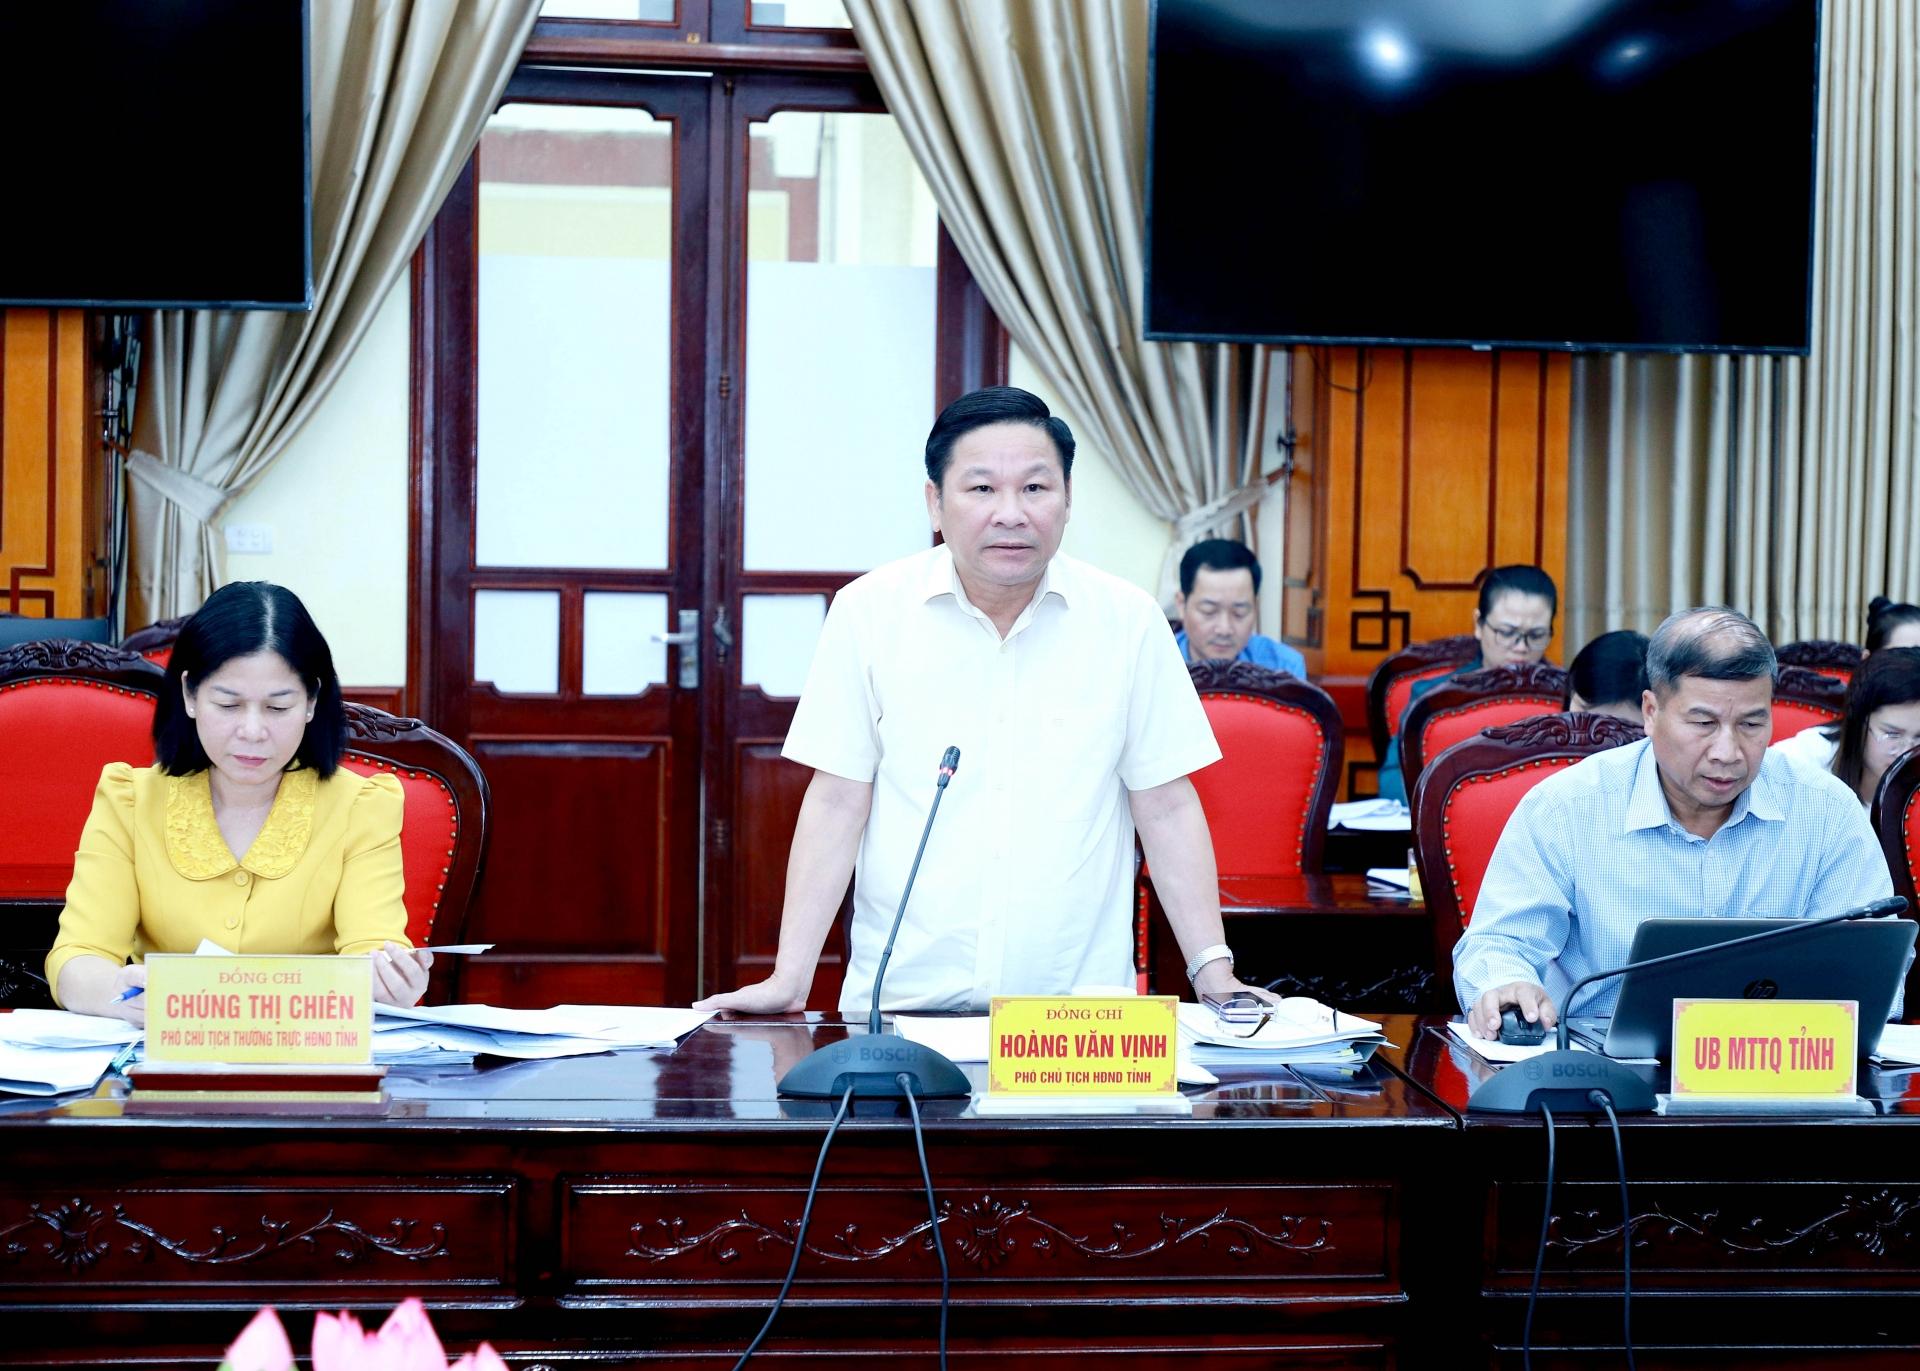 Phó Chủ tịch HĐND tỉnh Hoàng Văn Vịnh điều hành phần thảo luận tại buổi giám sát.